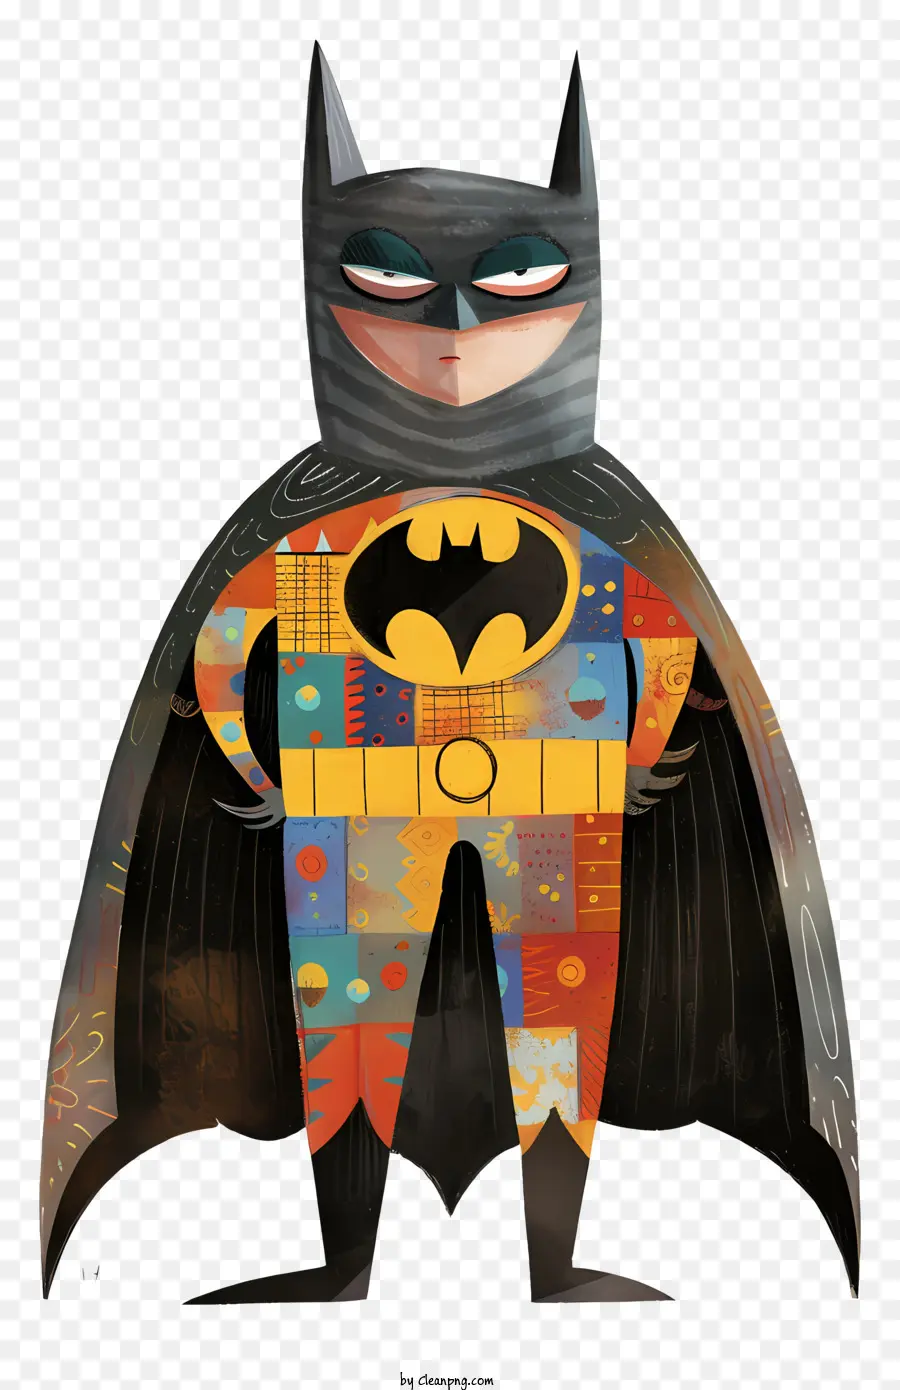 Batman - Carattere di supereroi in mantello rosso con le braccia incrociate